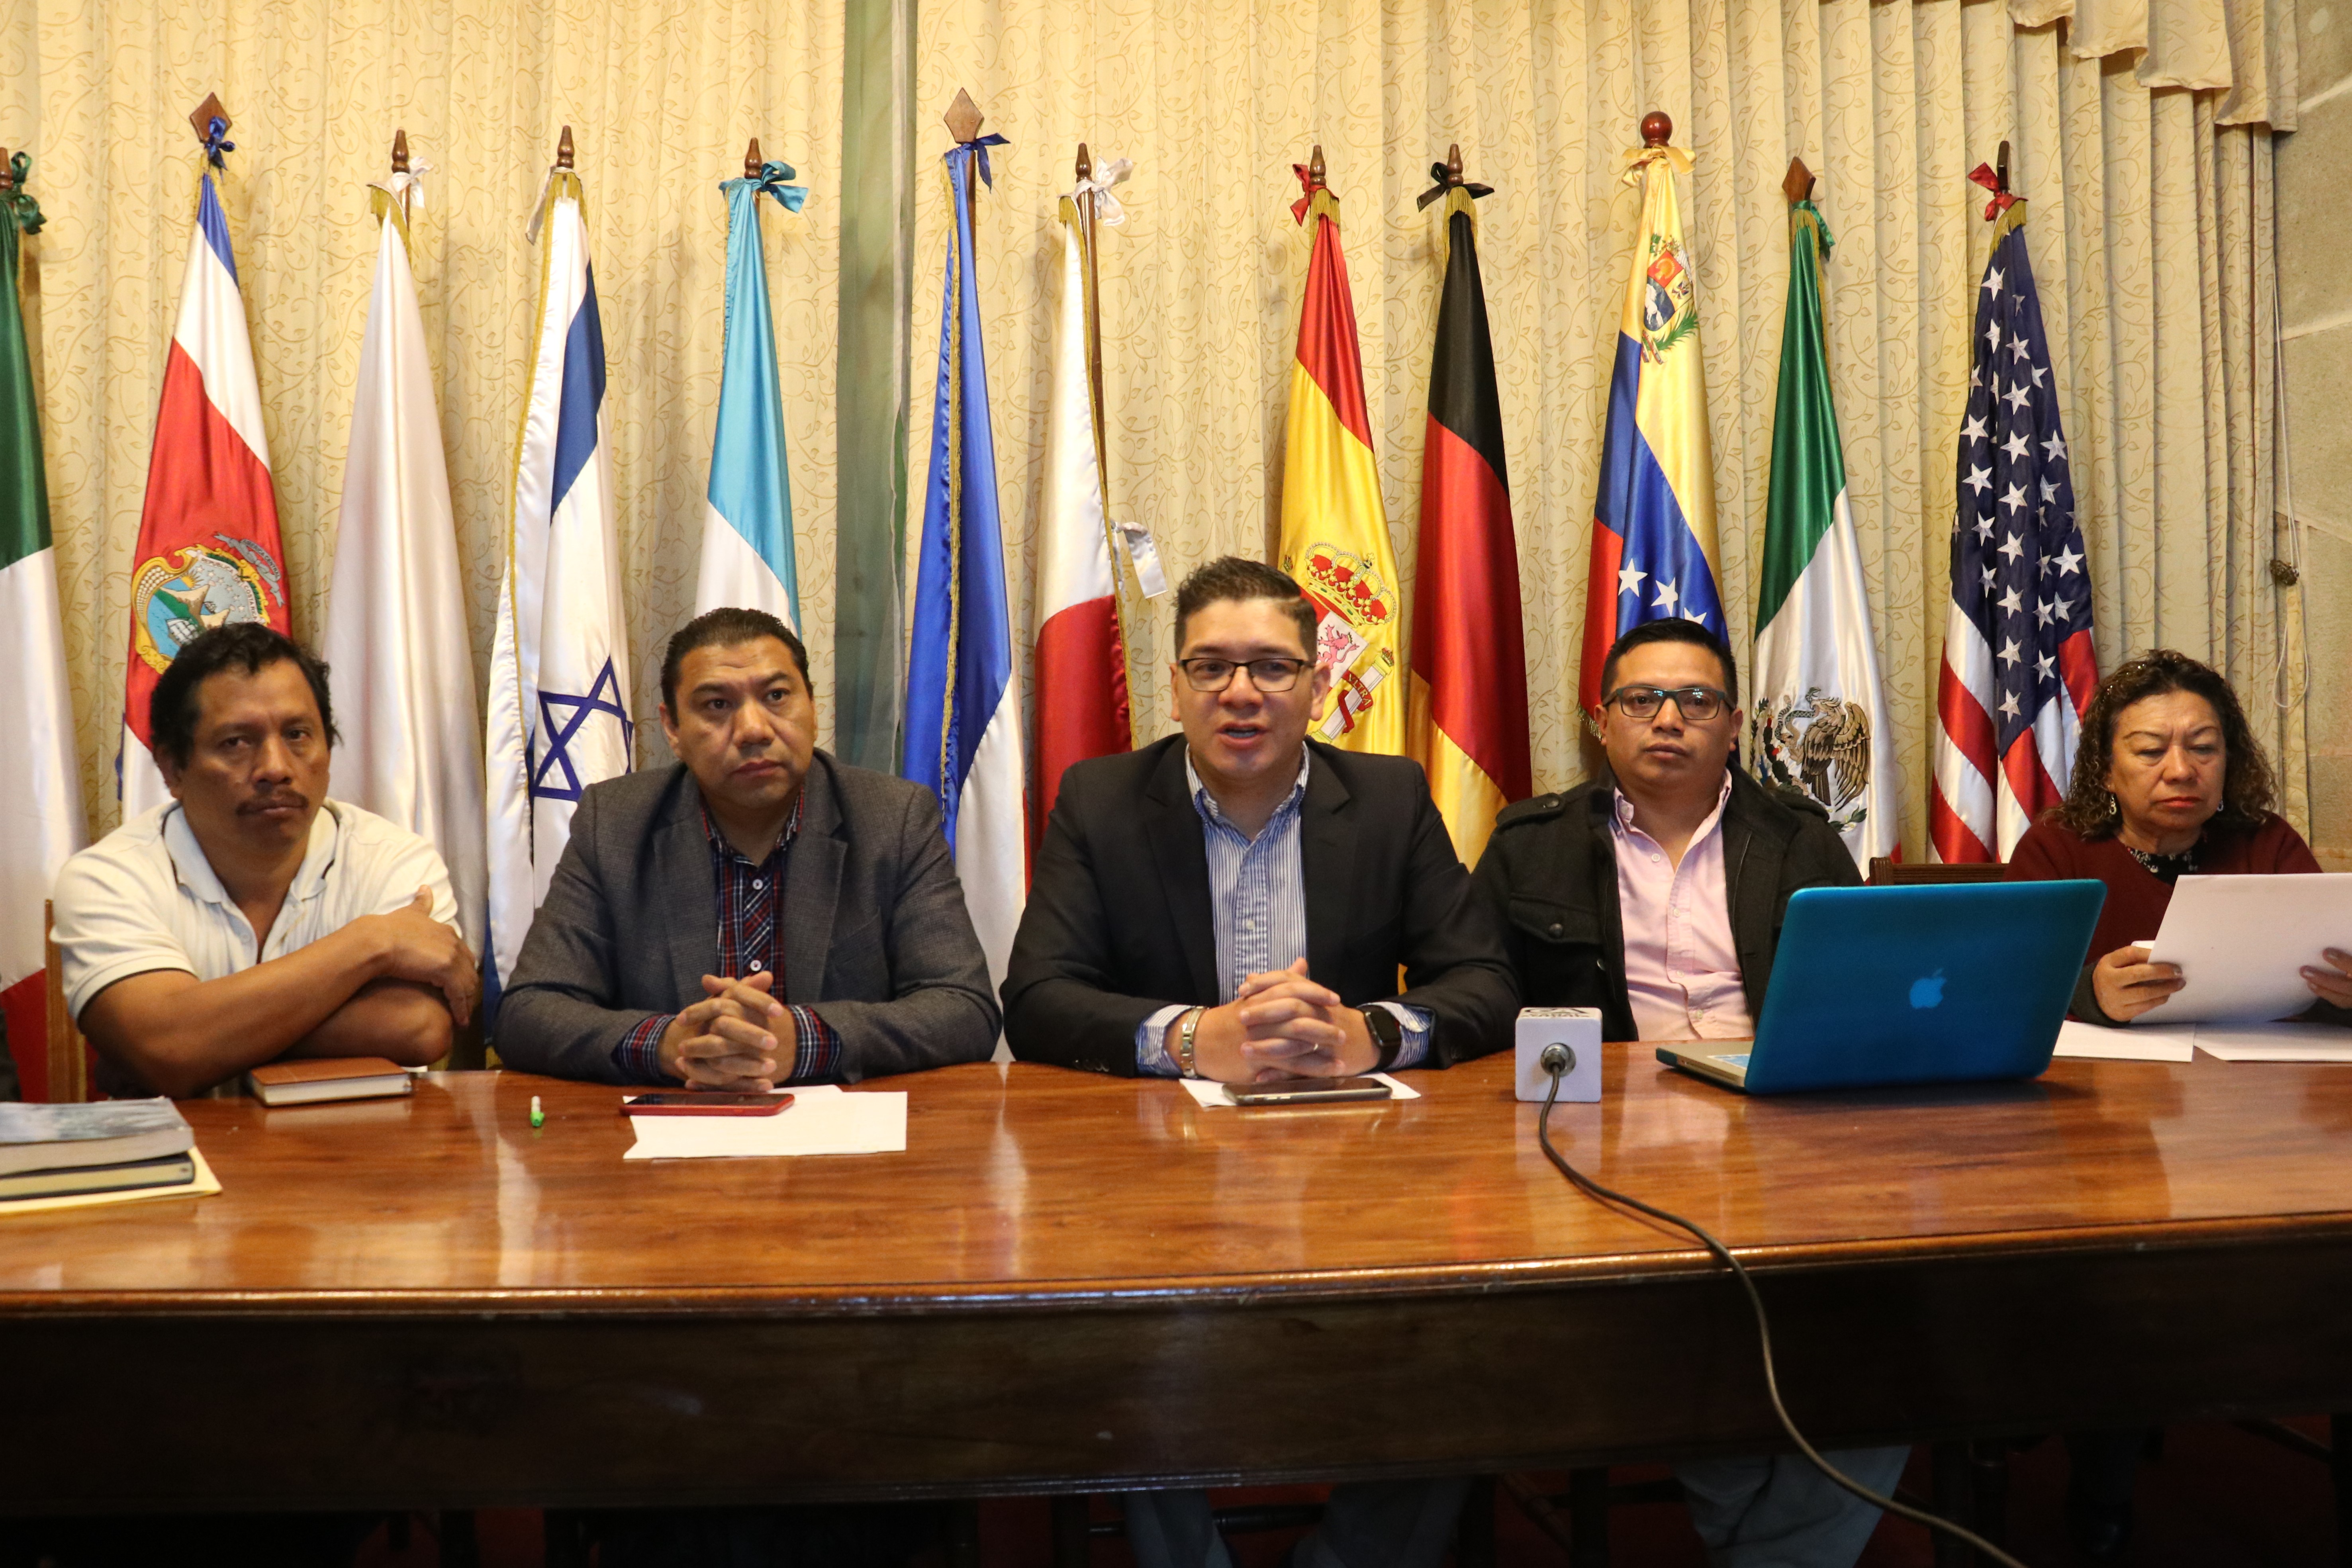 Jason Ochoa -centro- representante de sociedad civil fue el encargado de dar detalles de la convocatoria. (Foto Prensa Libre: Raúl Juárez)